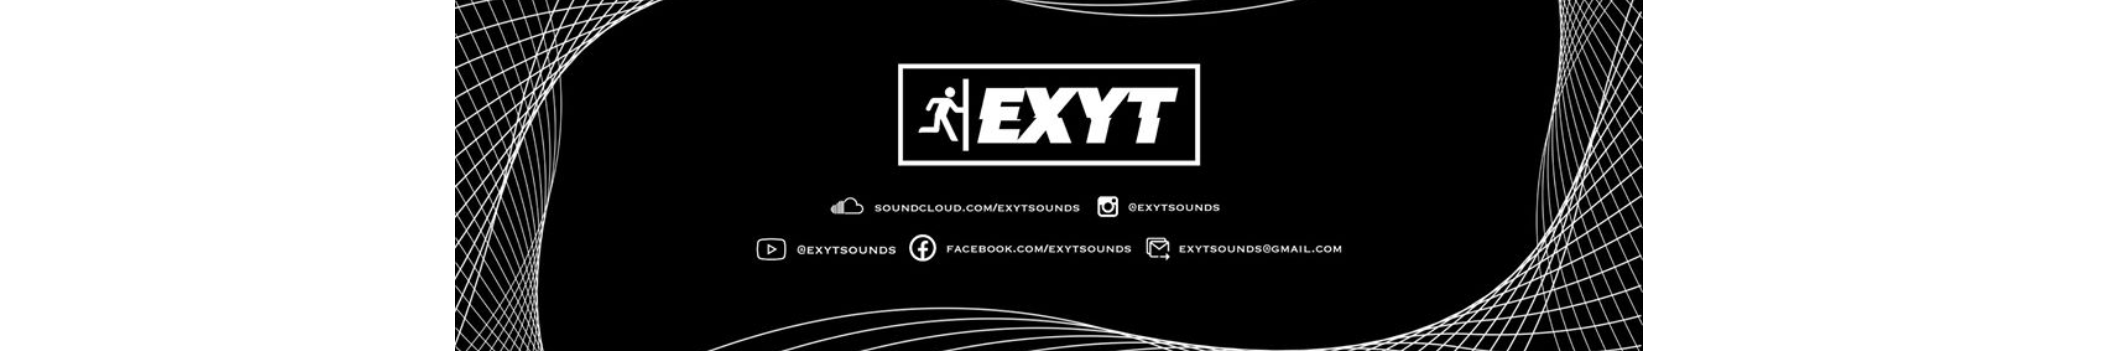 EXYTsounds